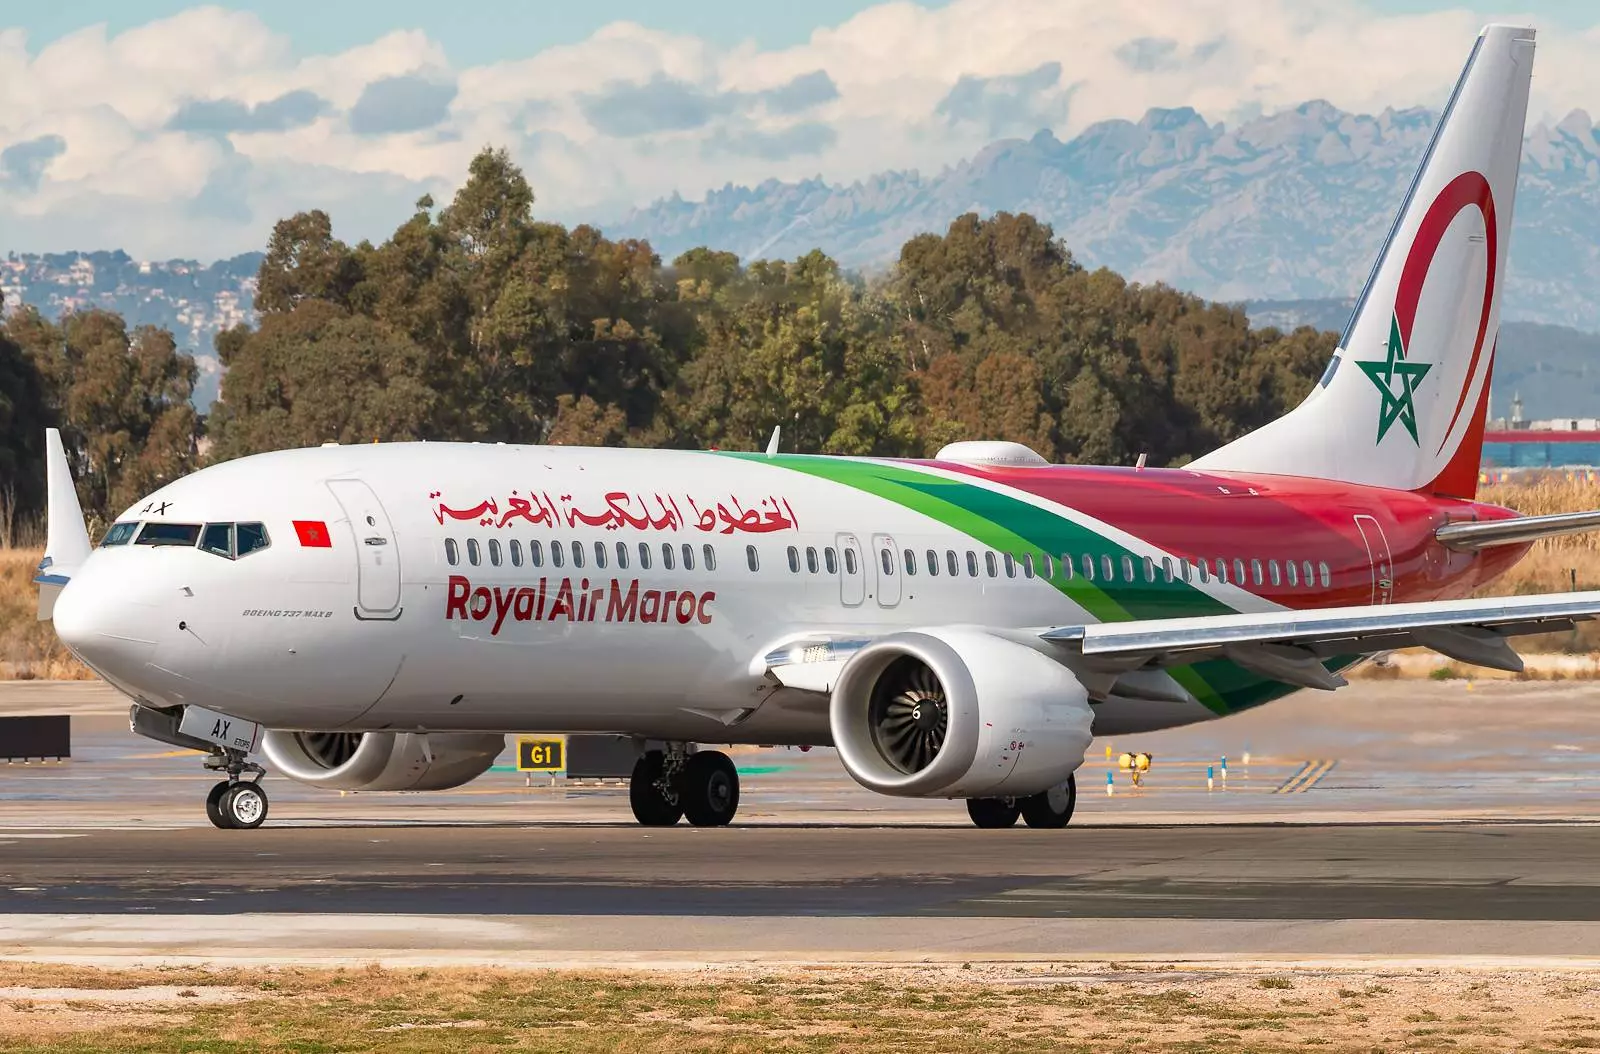 Royal air maroc (королевские авиалинии марокко)